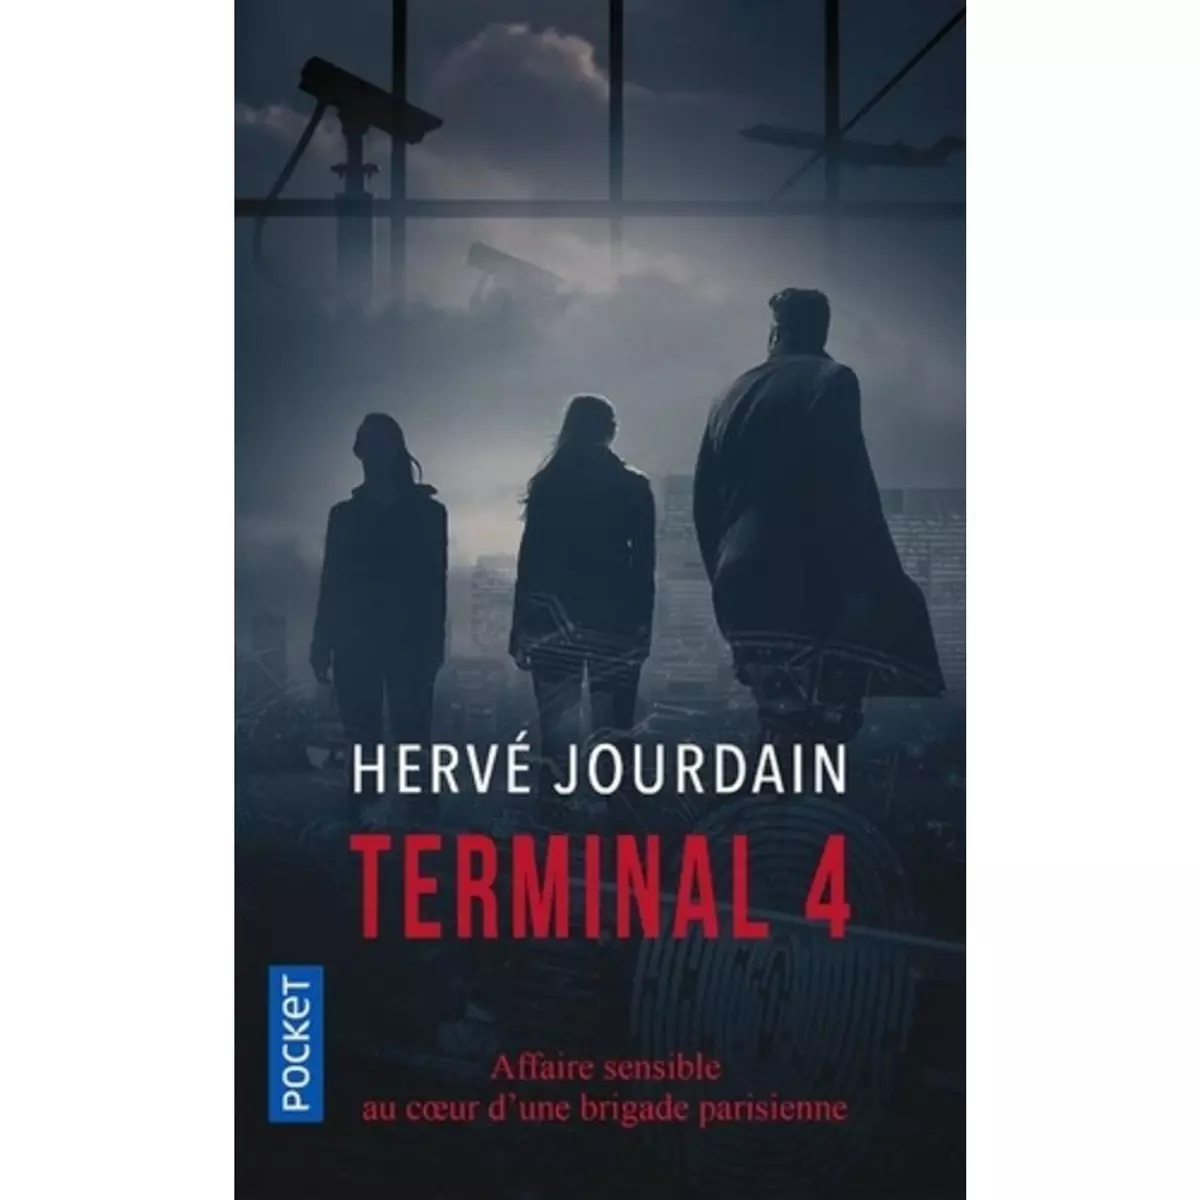  TERMINAL 4, Jourdain Hervé